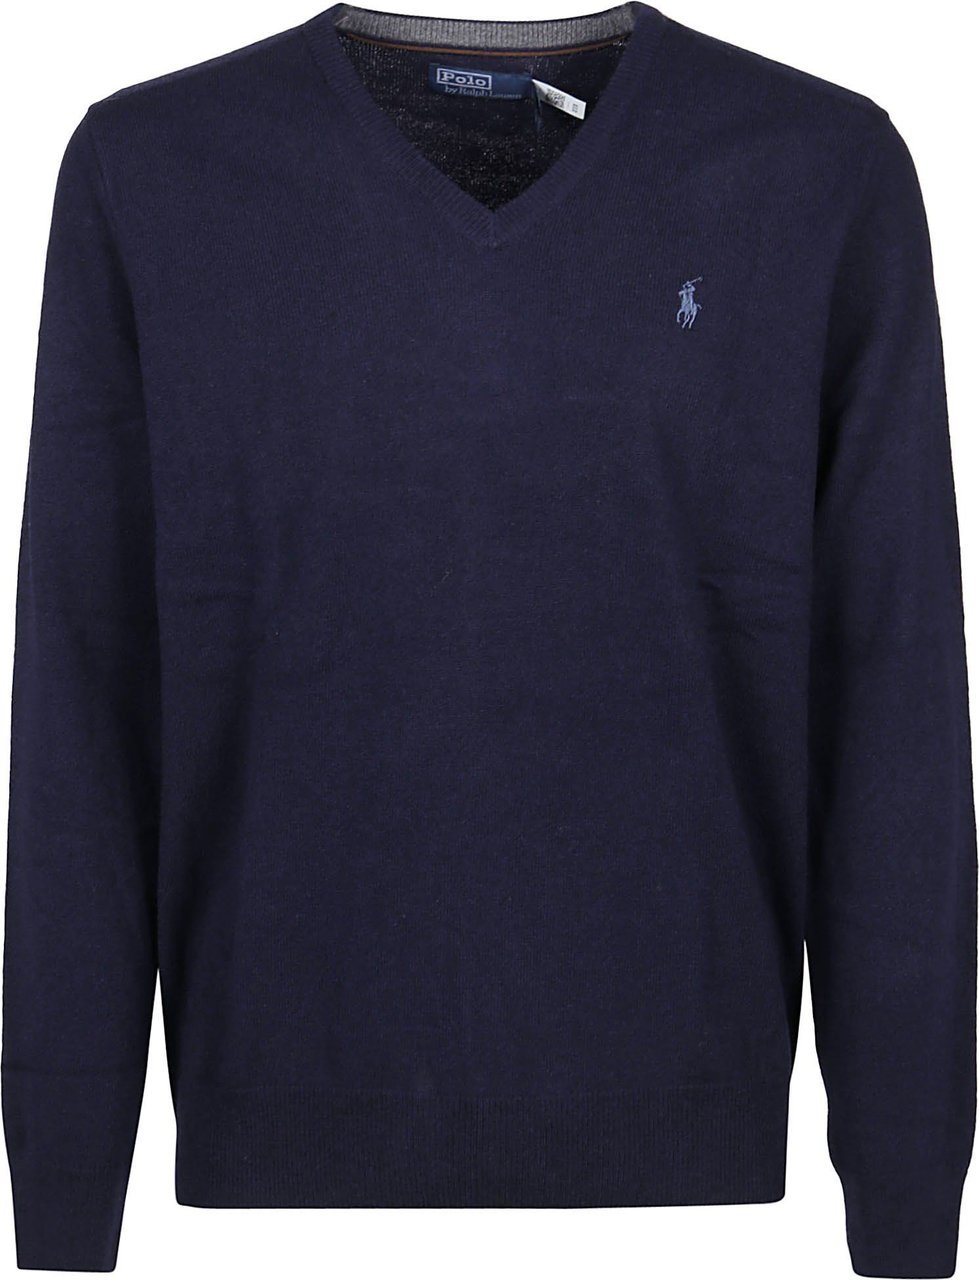 Ralph Lauren Long Sleeve Sweater Blue Blauw